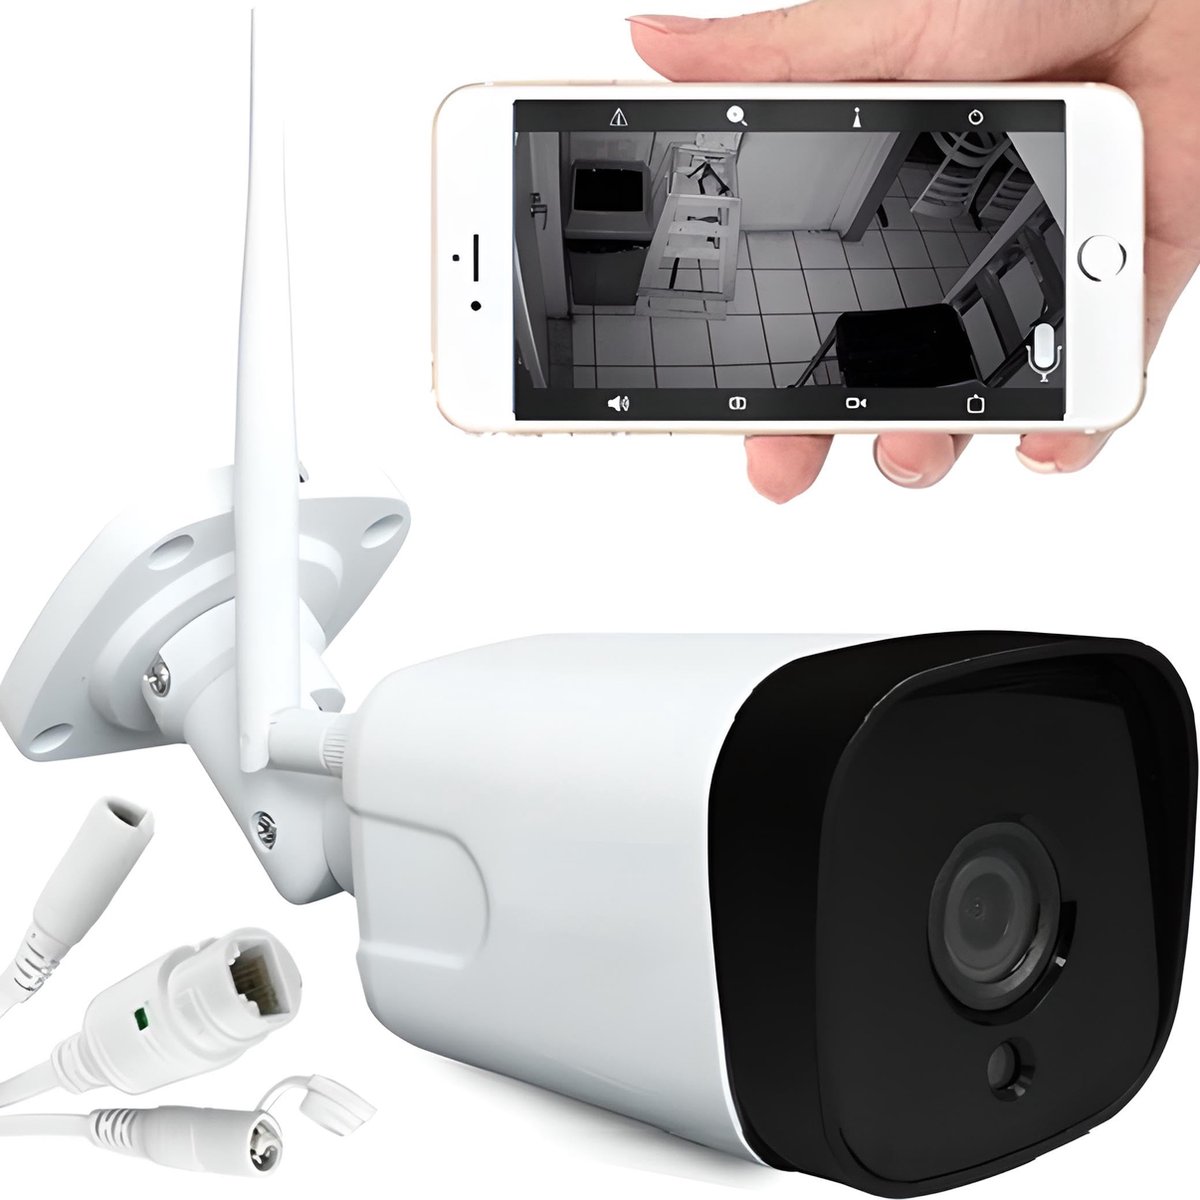 Beroli - Retoo Bewakingscamera voor buiten - 1080p met 2 Mpx en bereik tot 50 m - Camera met wifi 2,4 GHz en Full HD-resolutie - Outdoor camera met nachtzicht - 5dBi-antenne en 4-voudige digitale zoom - App - Wit